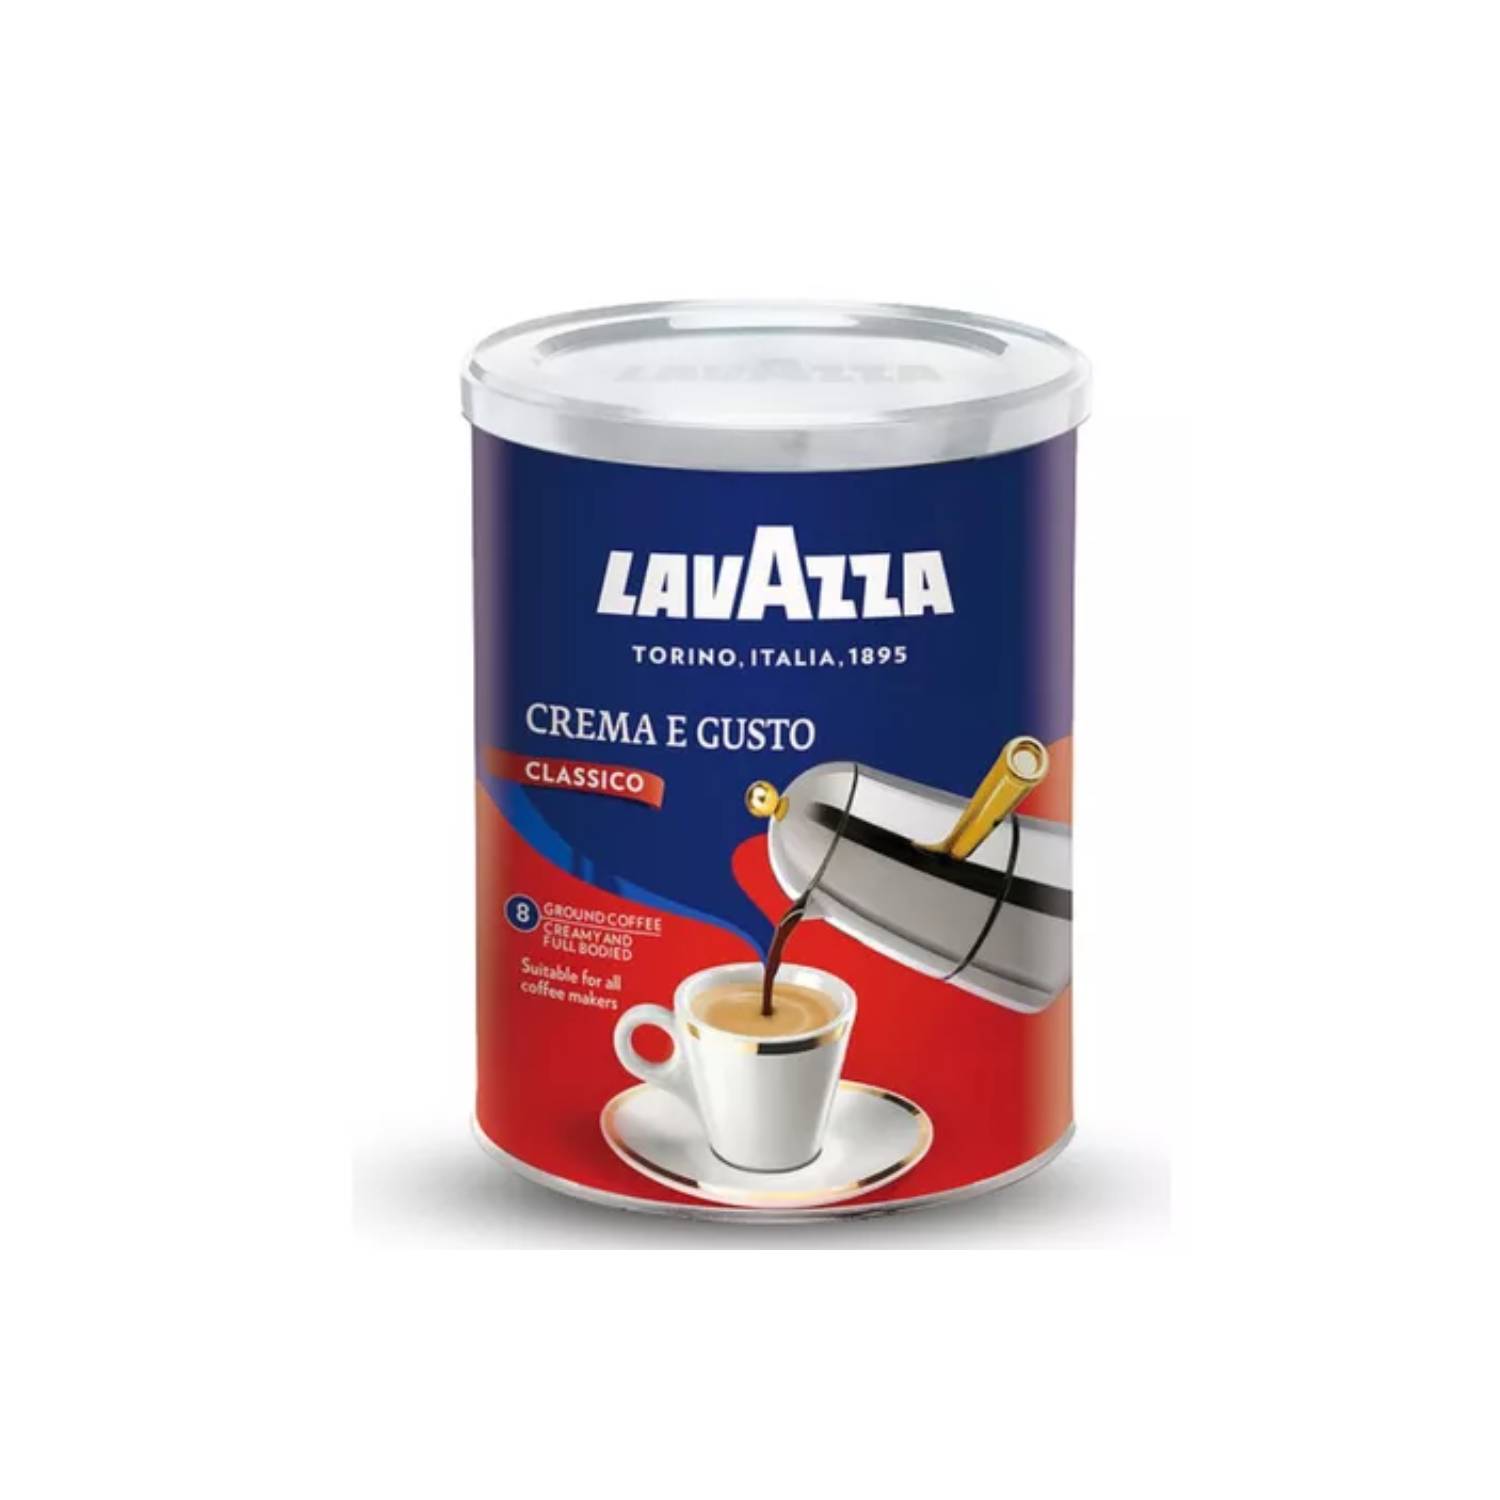 Café Lavazza retorna con tiendas y hasta venta de cápsulas